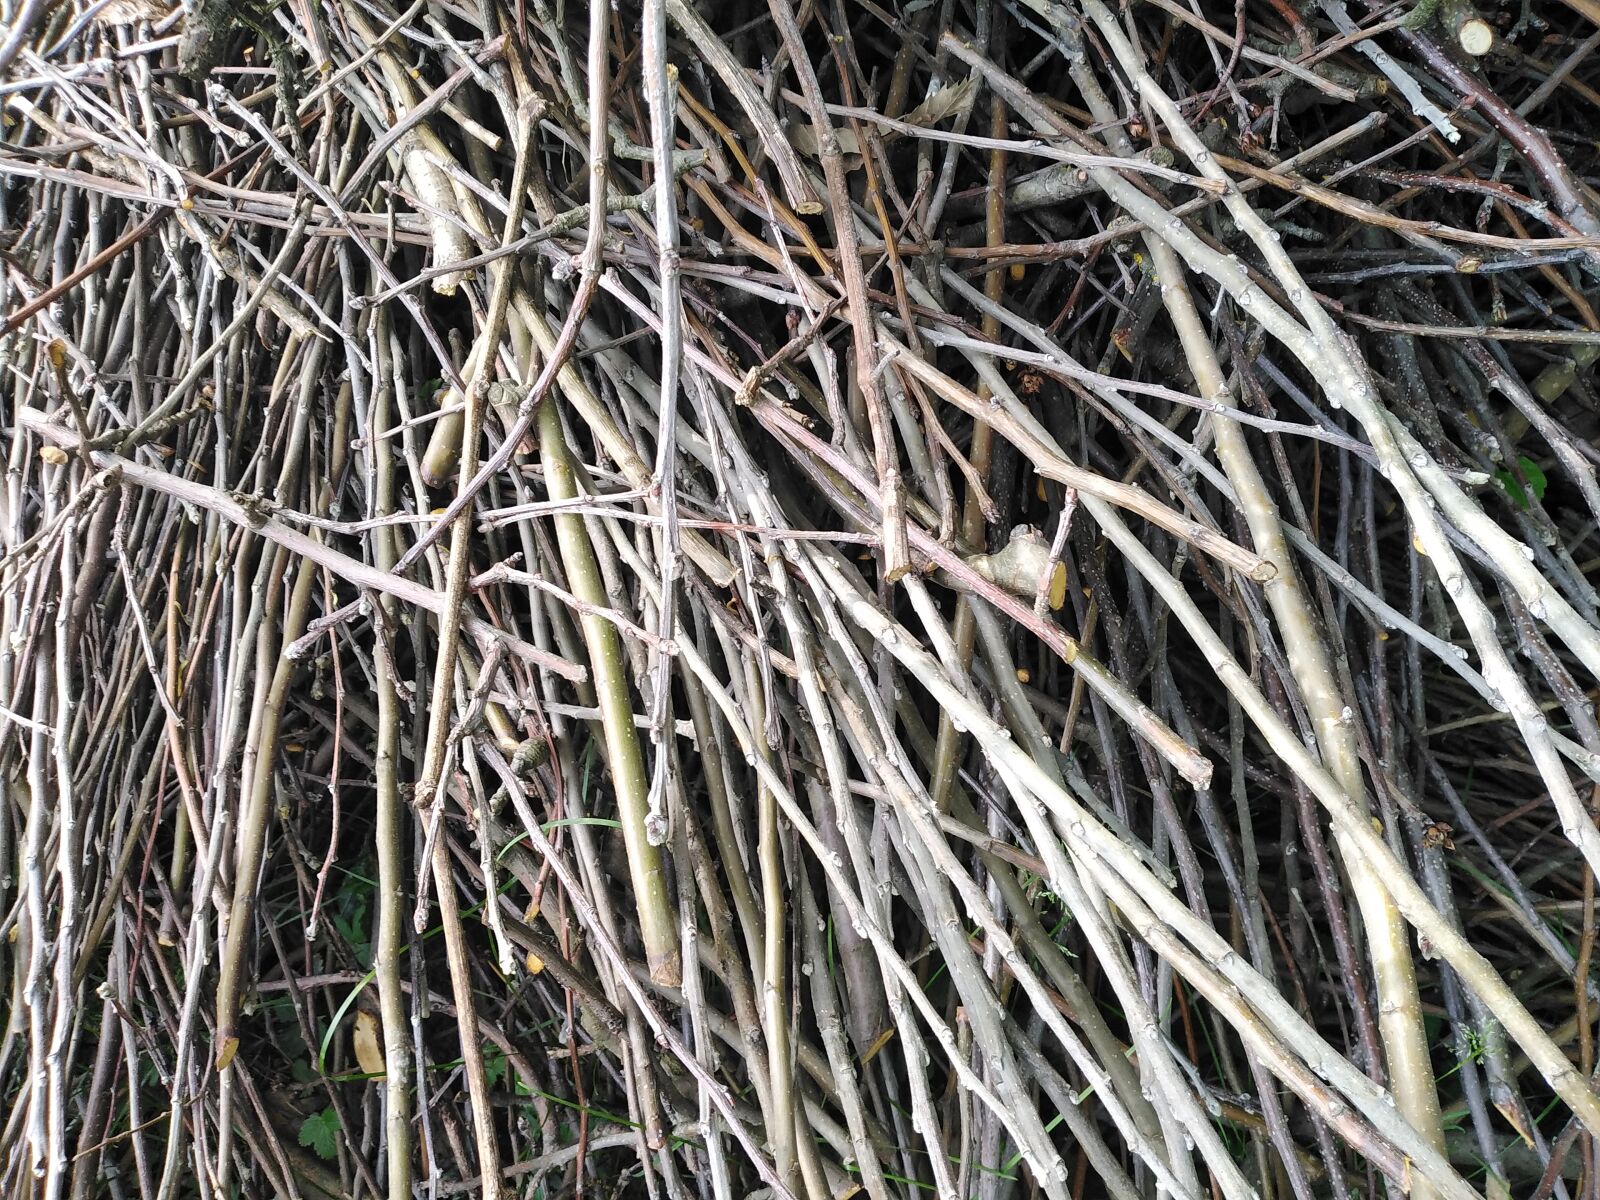 HUAWEI DUB-LX1 sample photo. Twigs, nature, pattern photography